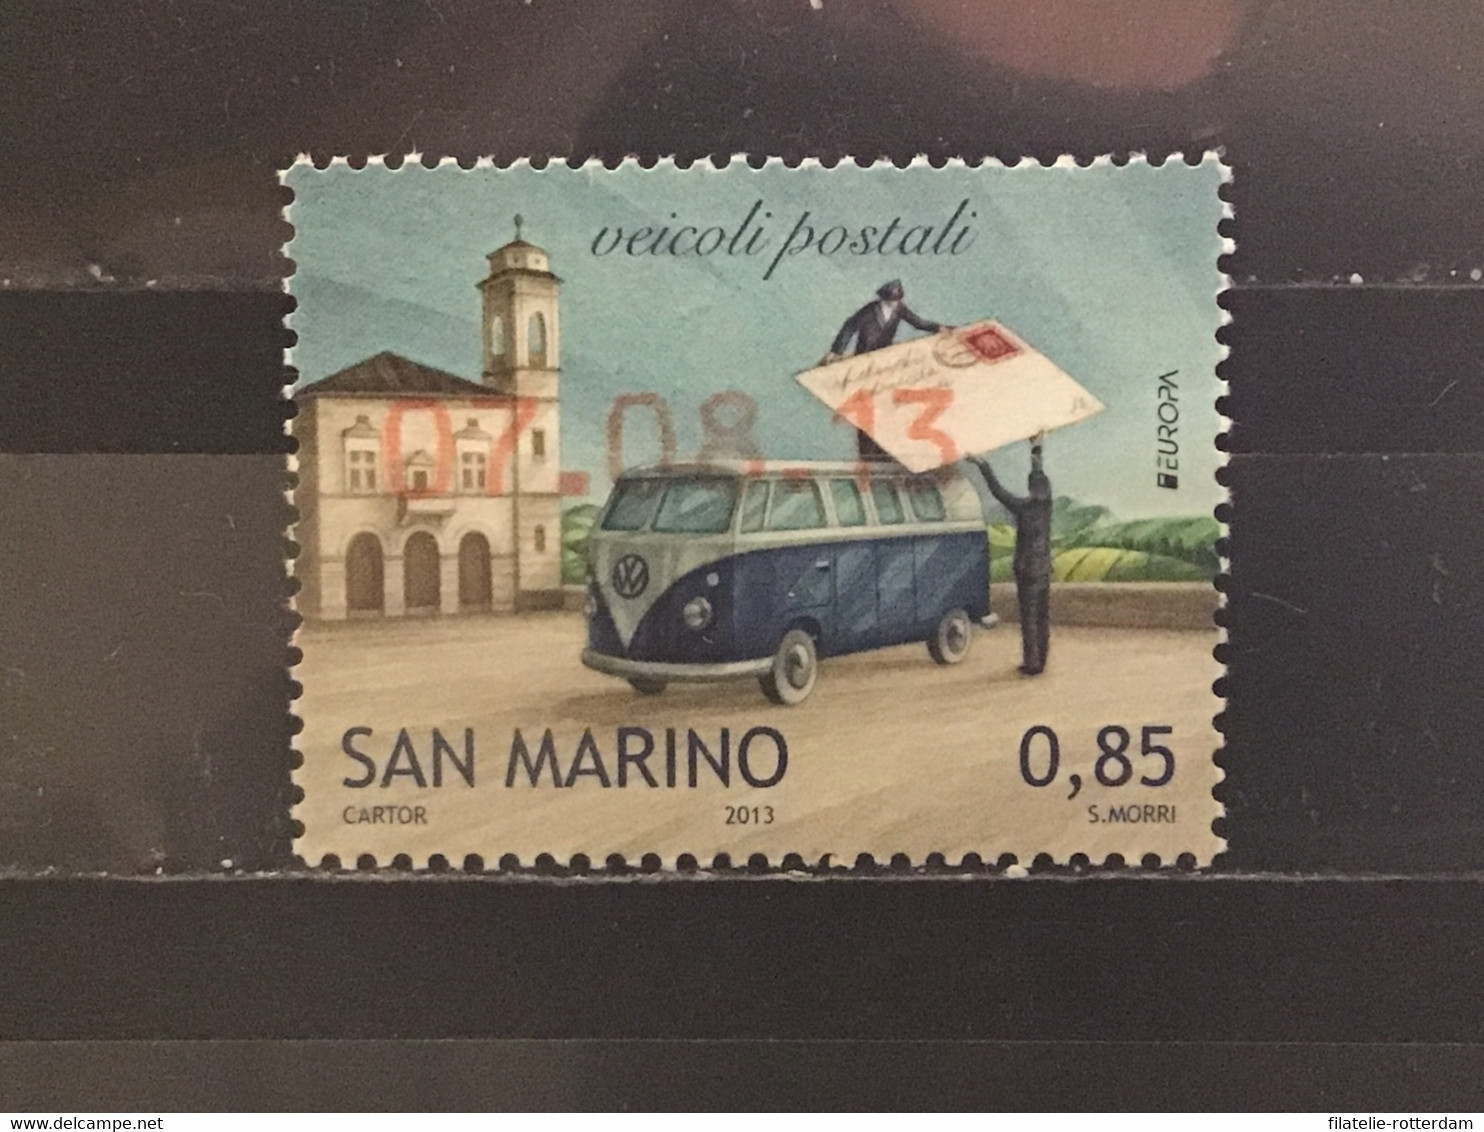 San Marino - Europa, Postvoertuigen (0.85) 2013 - Gebraucht